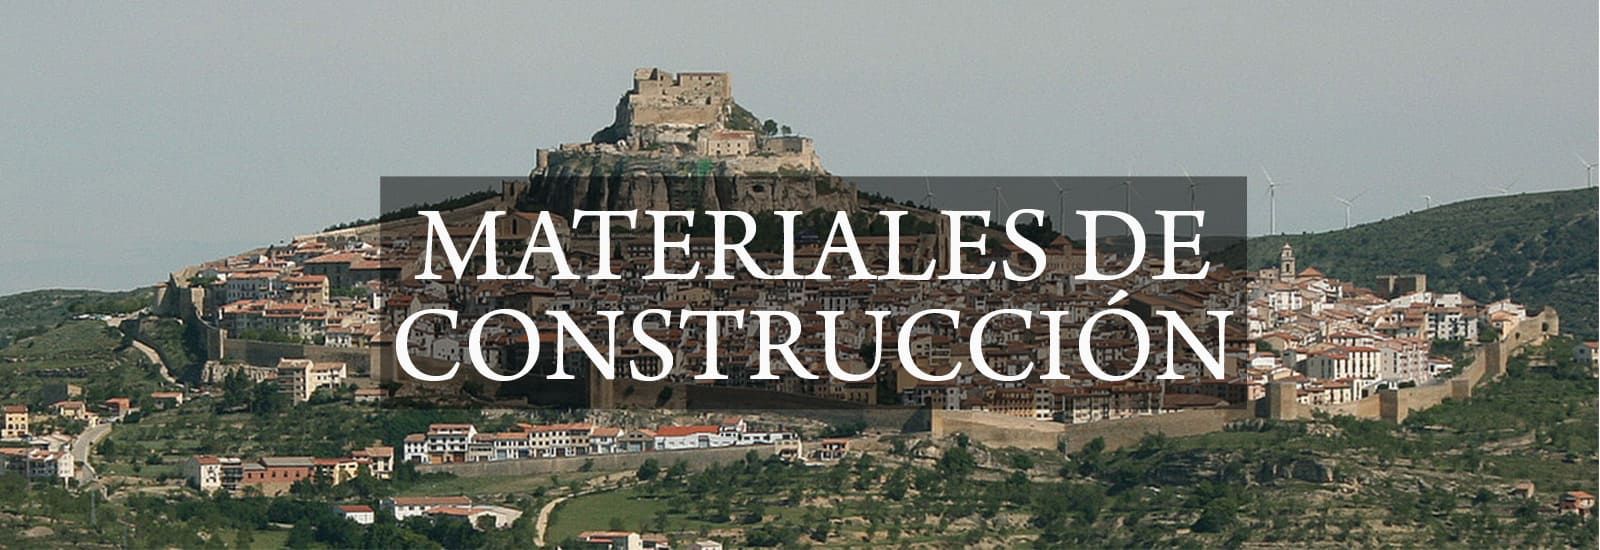 Aguilar Adell Almacén de Materiales de Construcción banner con letra